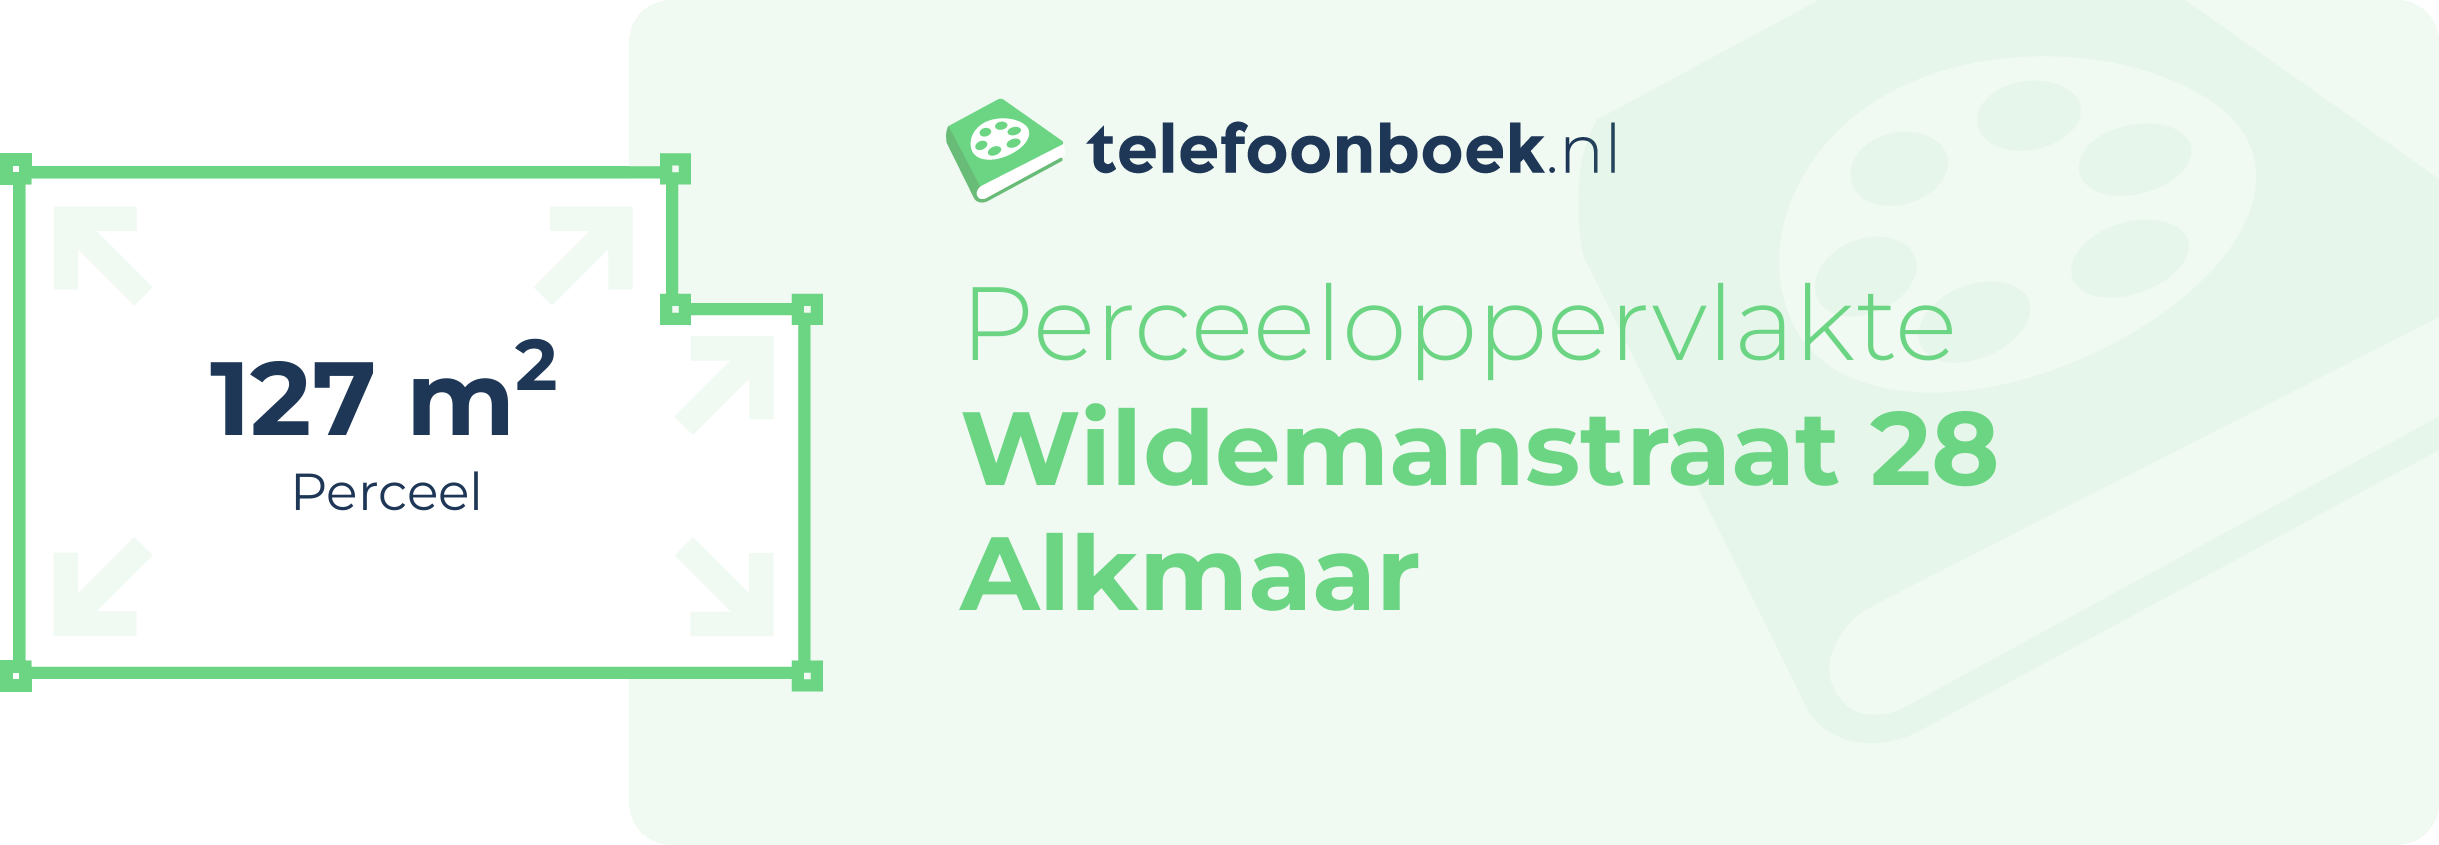 Perceeloppervlakte Wildemanstraat 28 Alkmaar